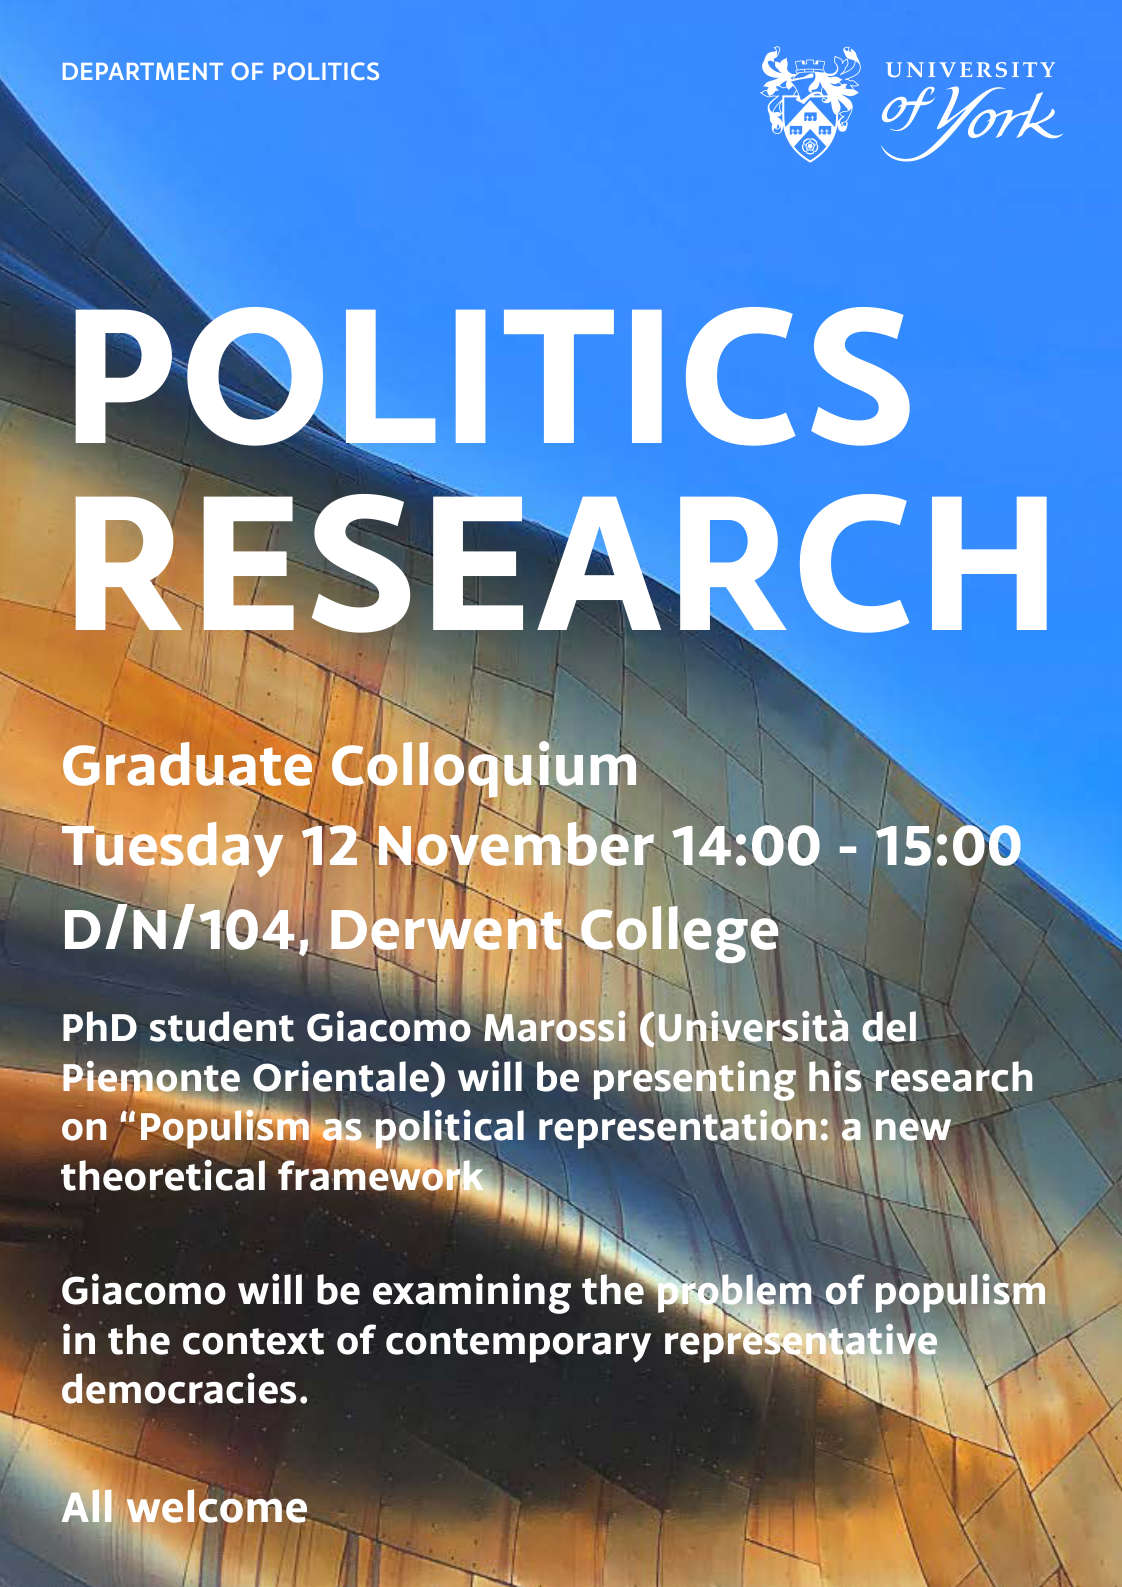 poster of graduate colloquium event